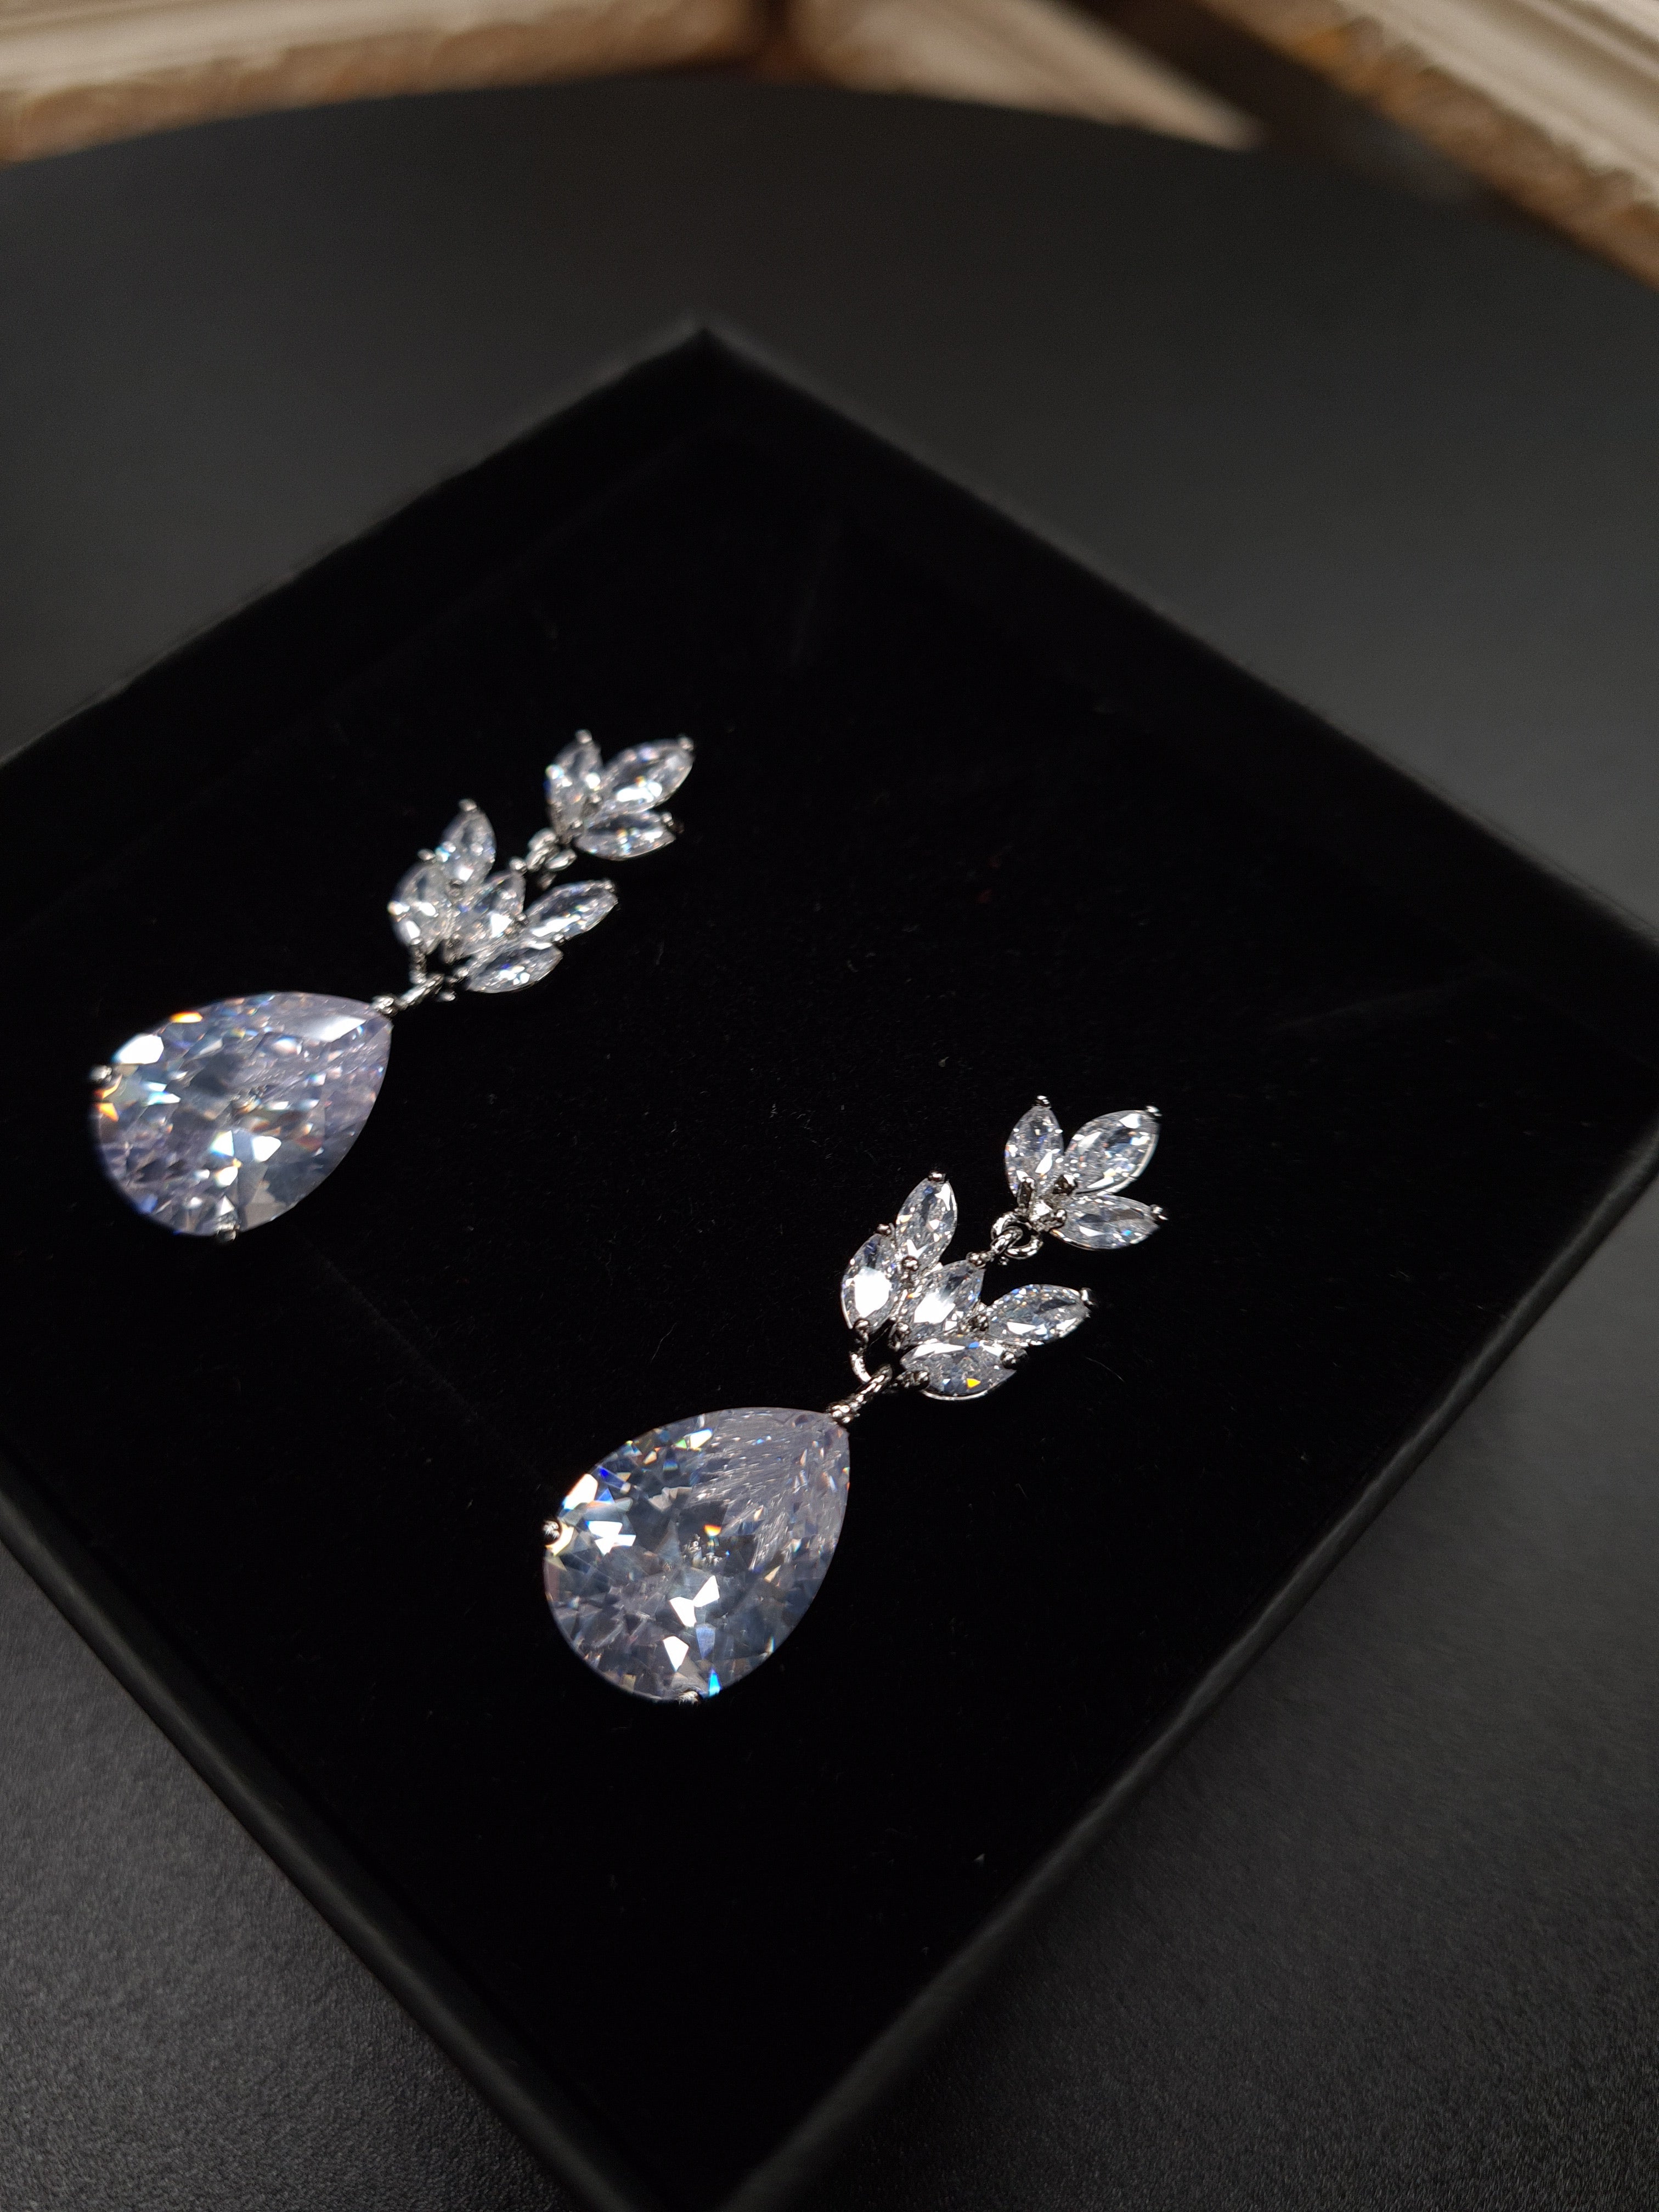 Crystal petals and teardrop earrings